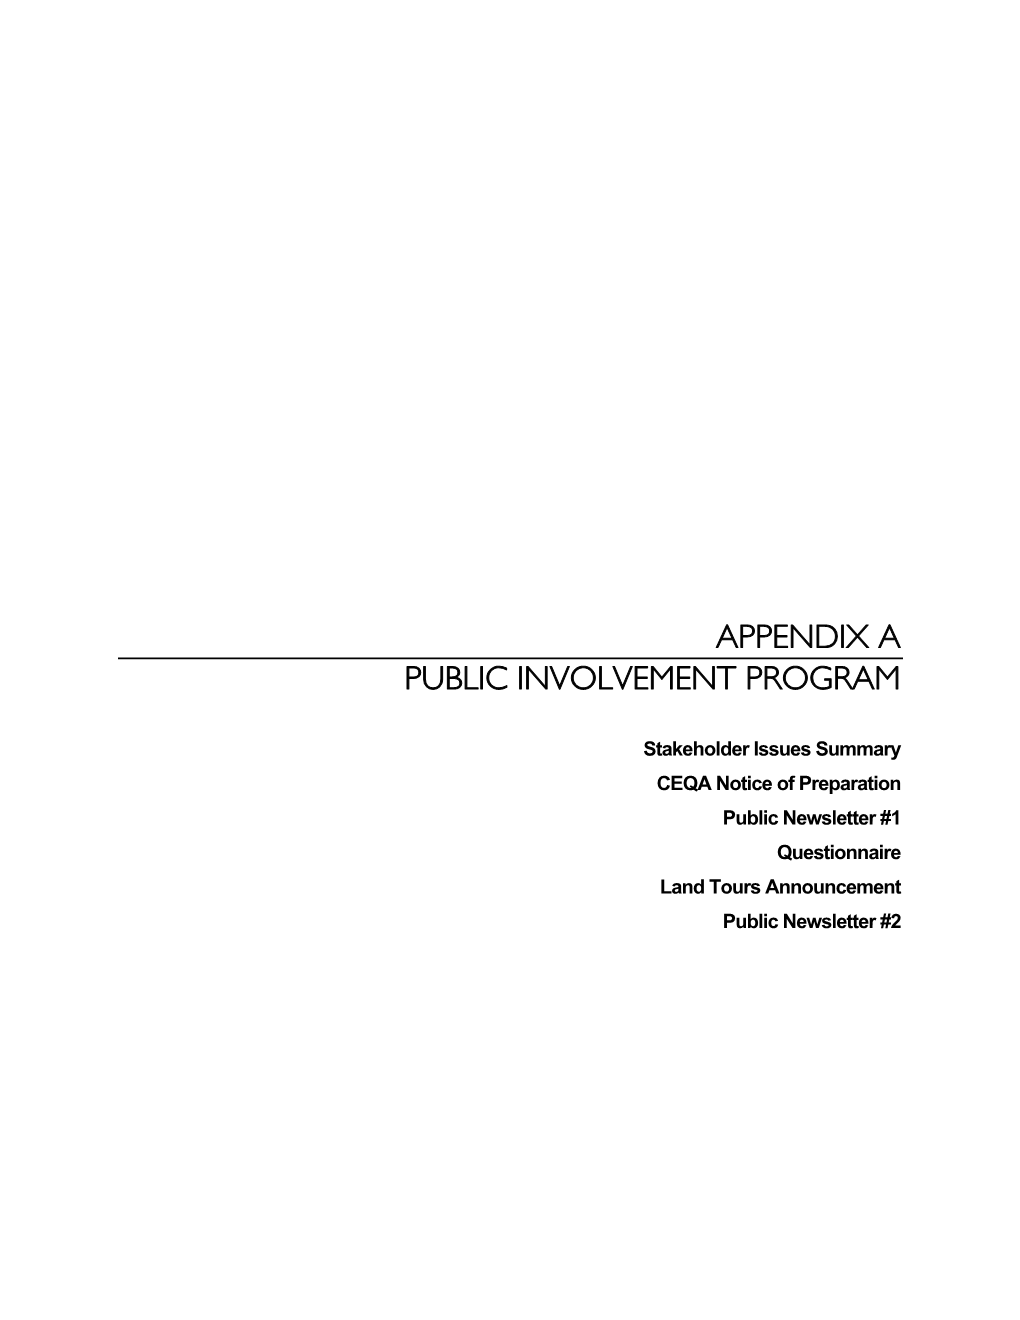 Appendix a Public Involvement Program